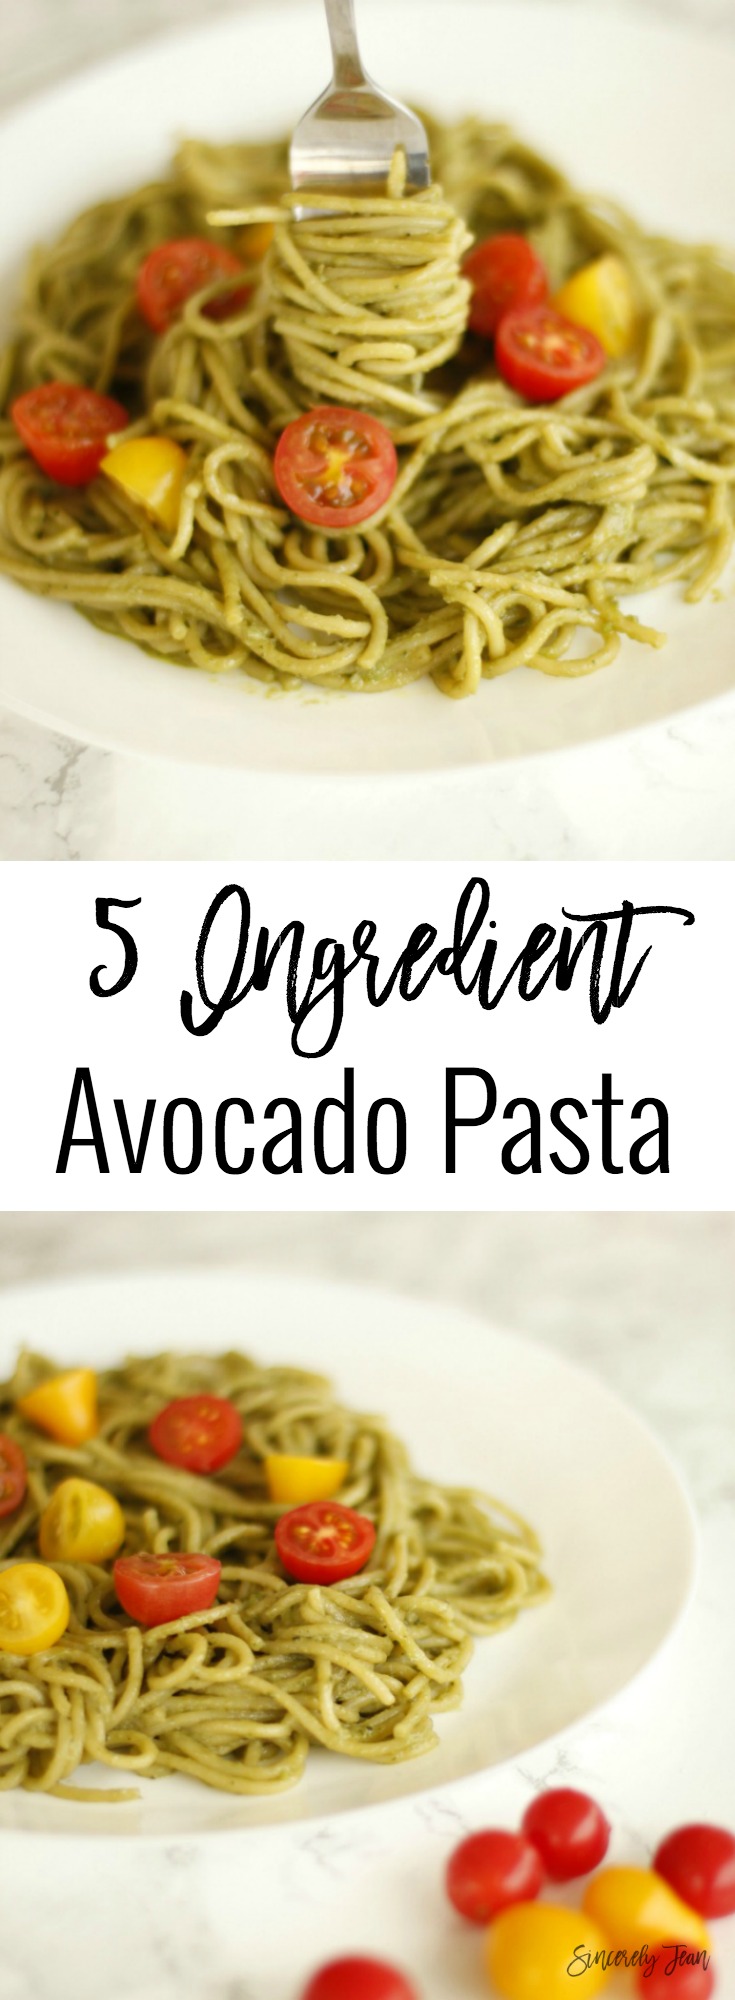 SincerelyJean.com brings you simple five ingredient dinners! Healthy Avocado Pasta